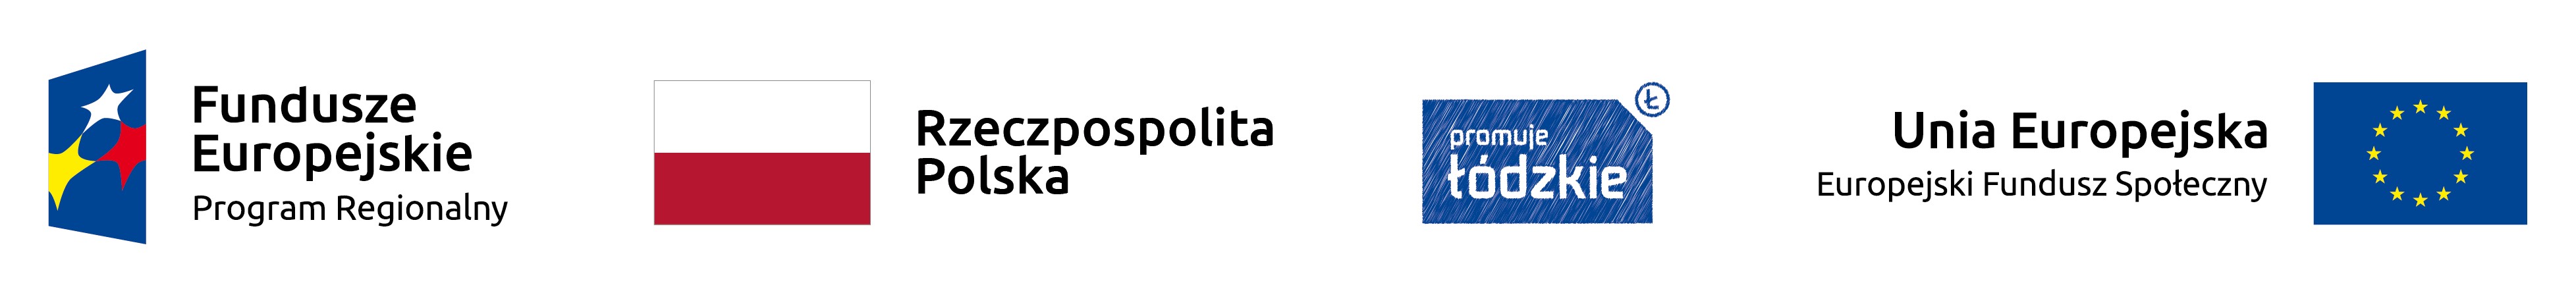 Znak Unii Europejskiej, znak Funduszy Europejskich, logo promocyjne województwa łódzkiego, barwy Rzeczypospolitej Polskiej